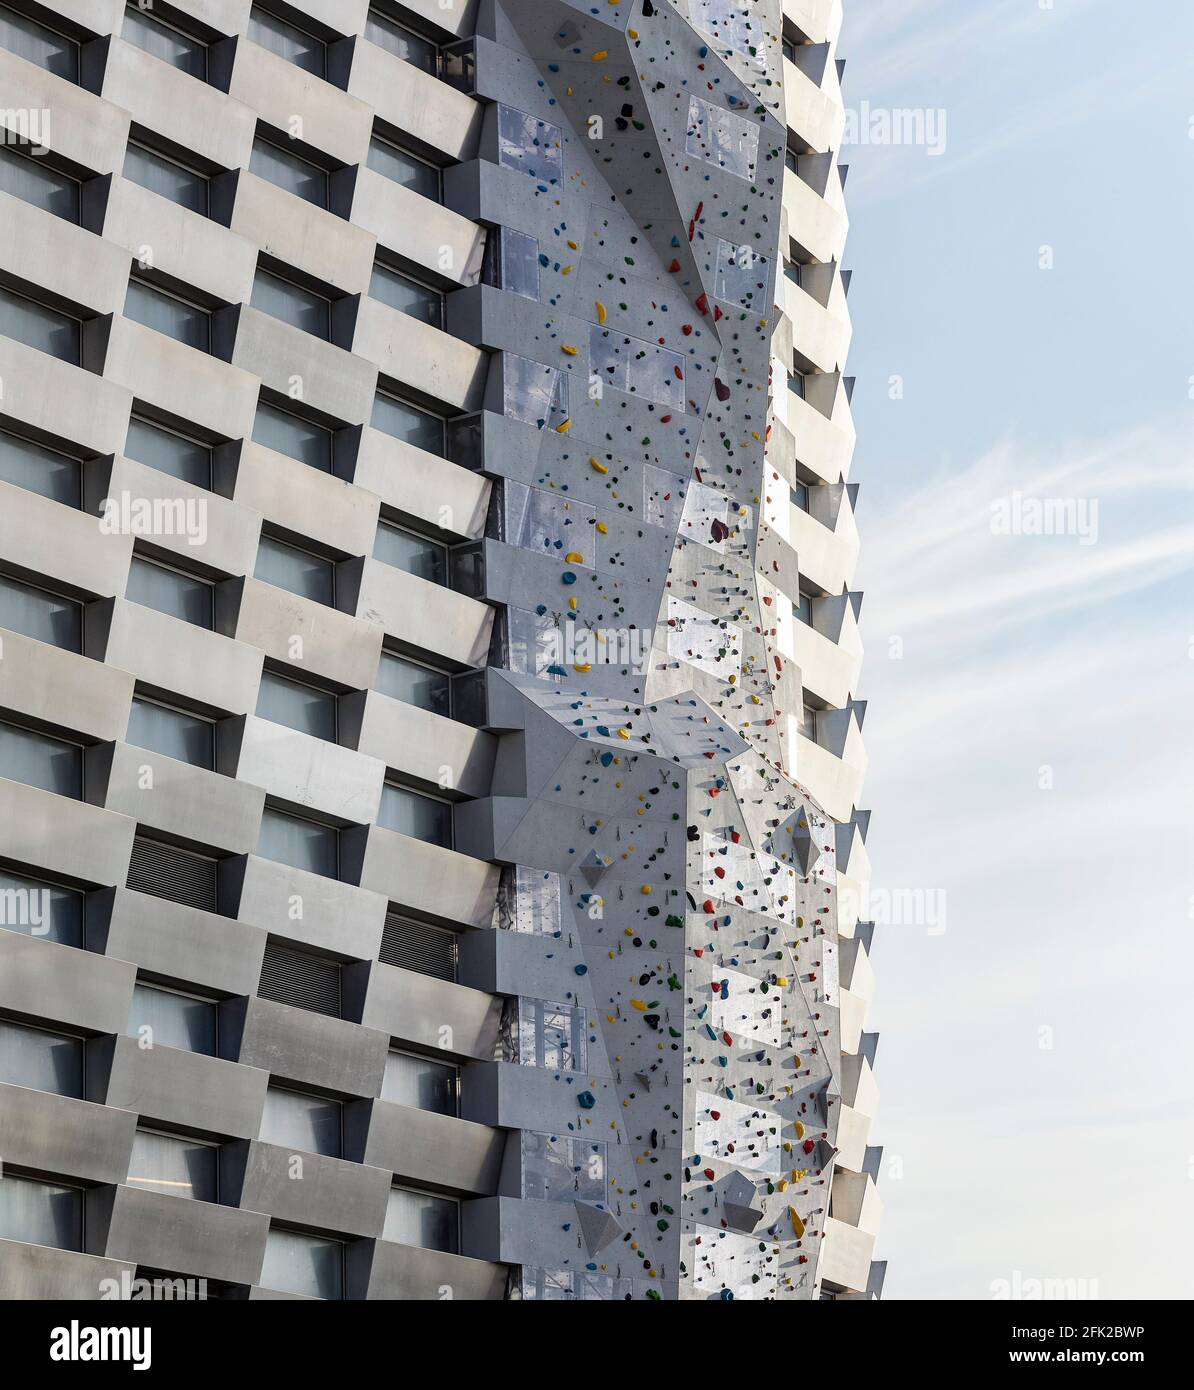 Außenhaut mit Kletterwand. Kraftwerk CoppenHill, Kopenhagen, Dänemark. Architekt: BIG Bjarke Ingels Group, 2019. Stockfoto